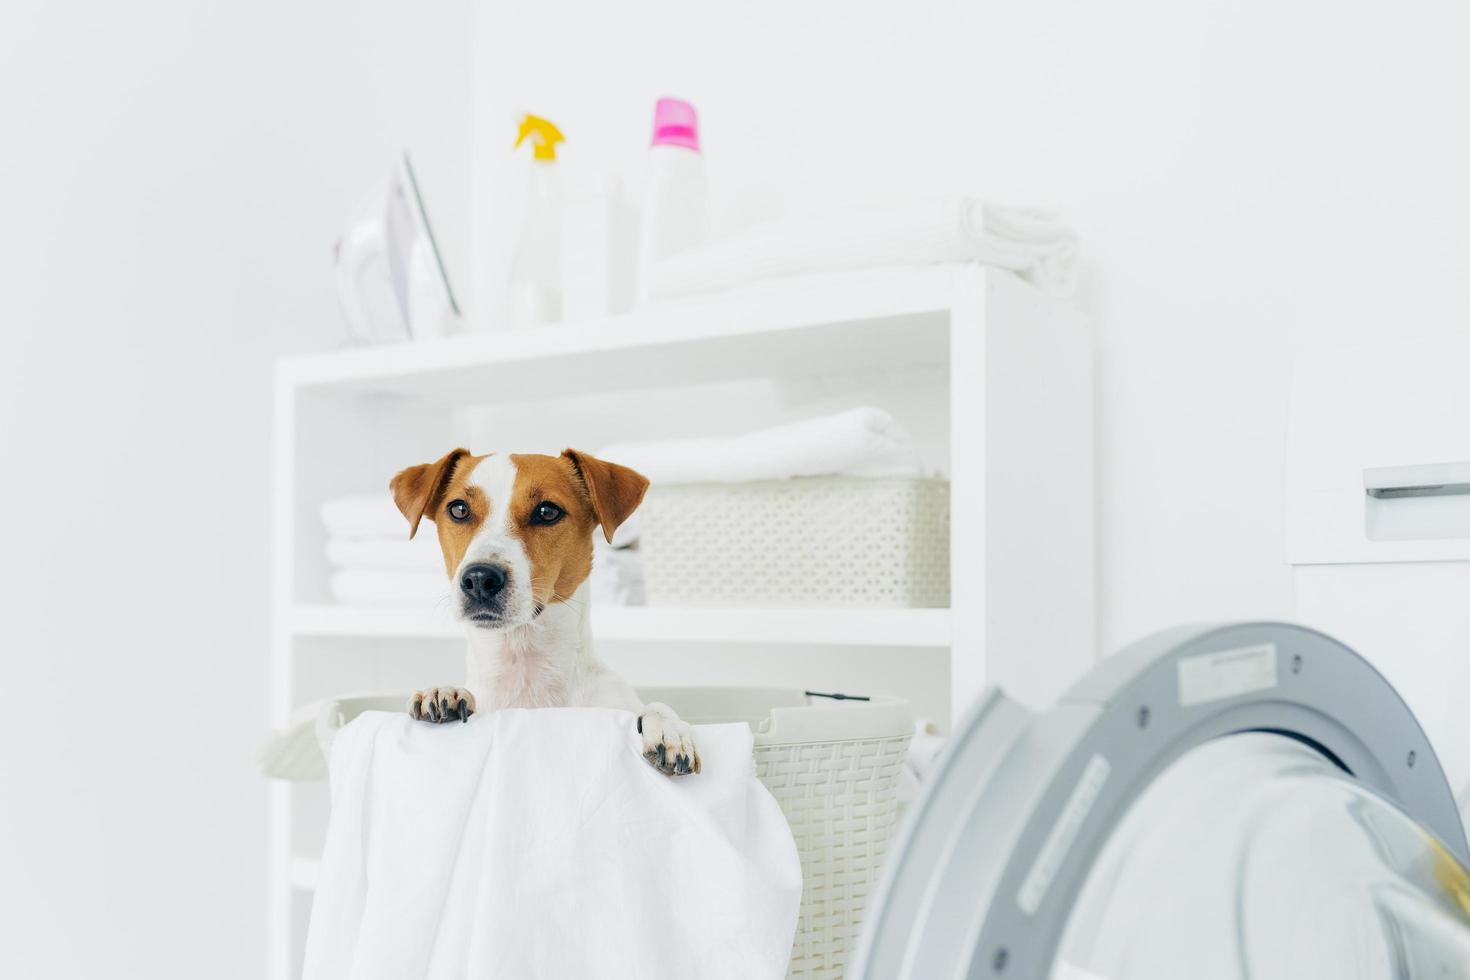 photo intérieure d'un chien de race dans un panier à linge, regarde à distance, machine à laver et console avec des détergents à proximité. animaux, propreté et concept de maison